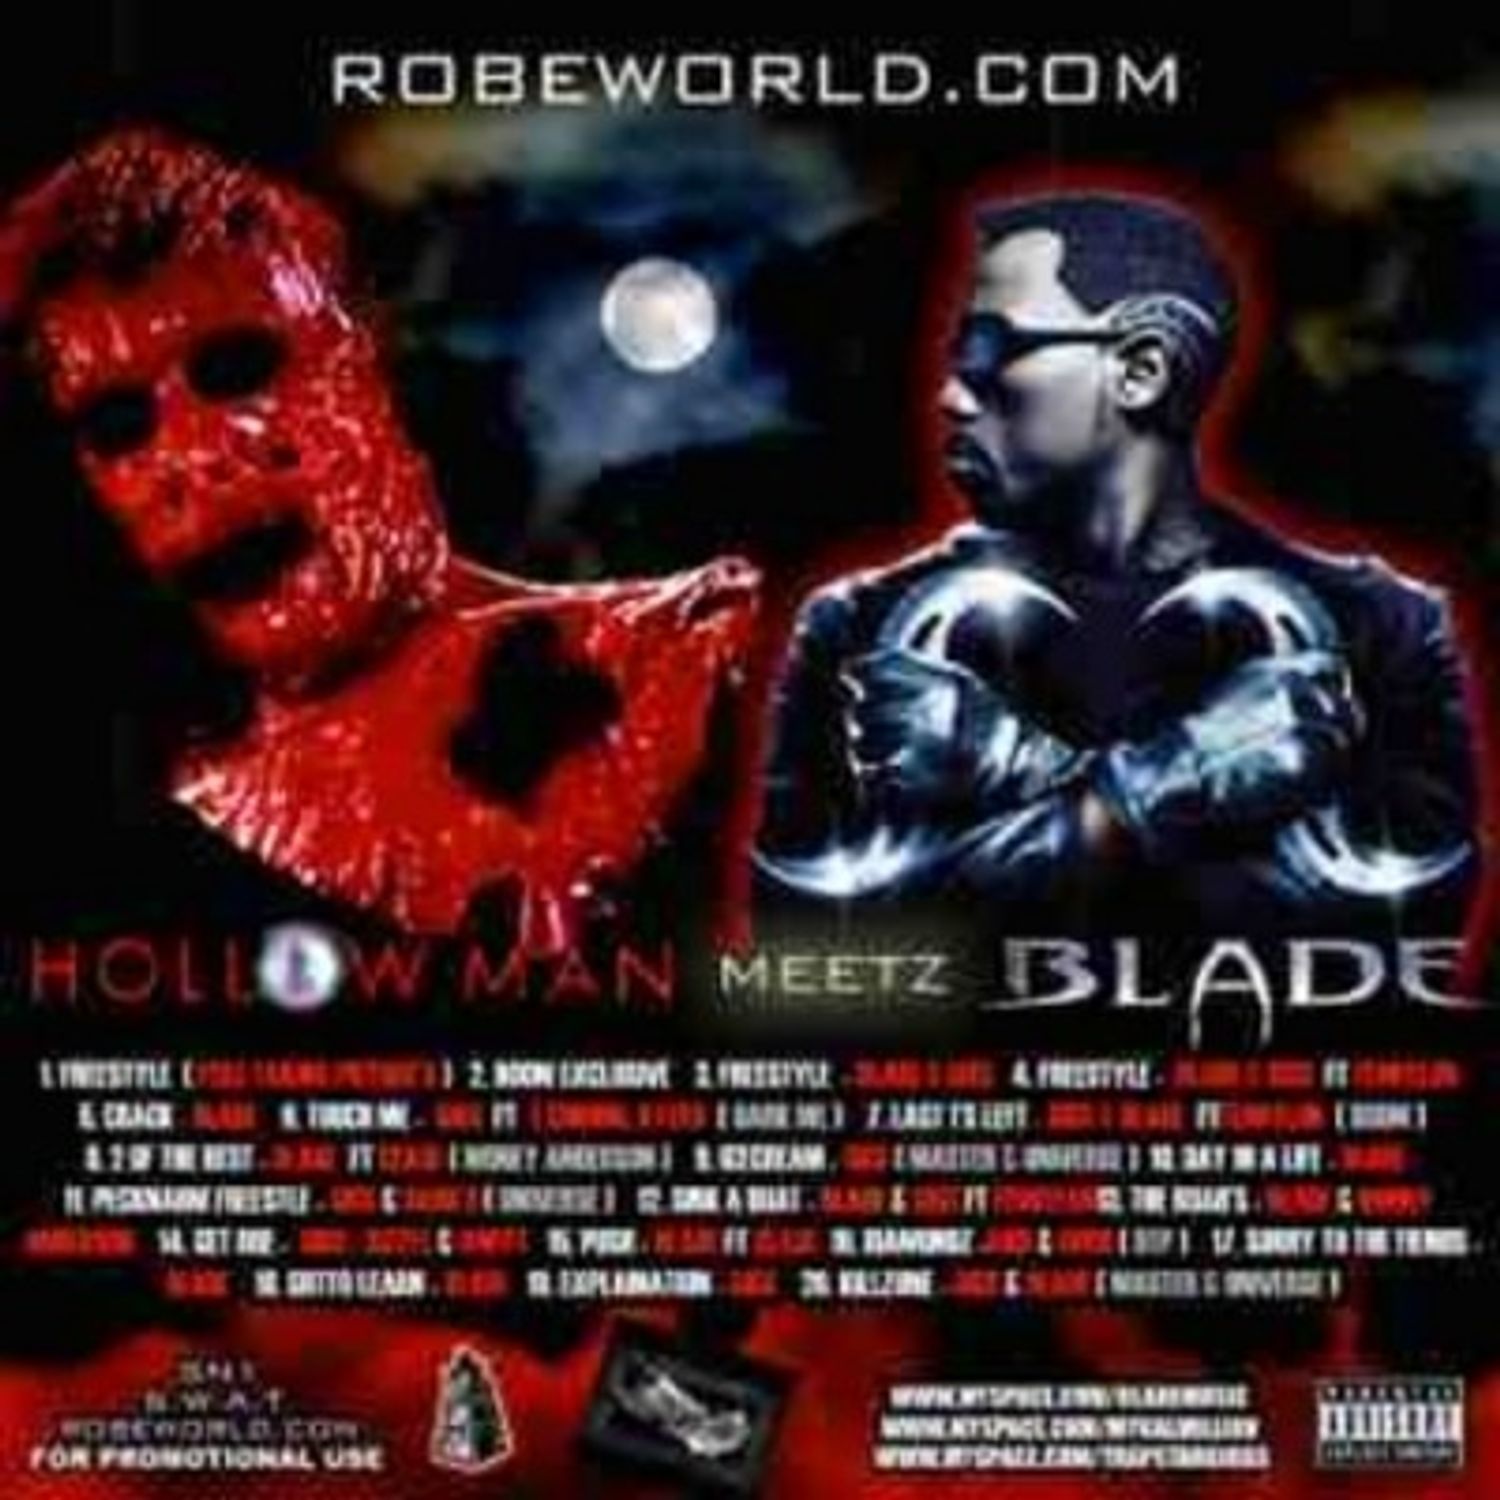 giggs and blade brown hollowman meetz blade mixtape